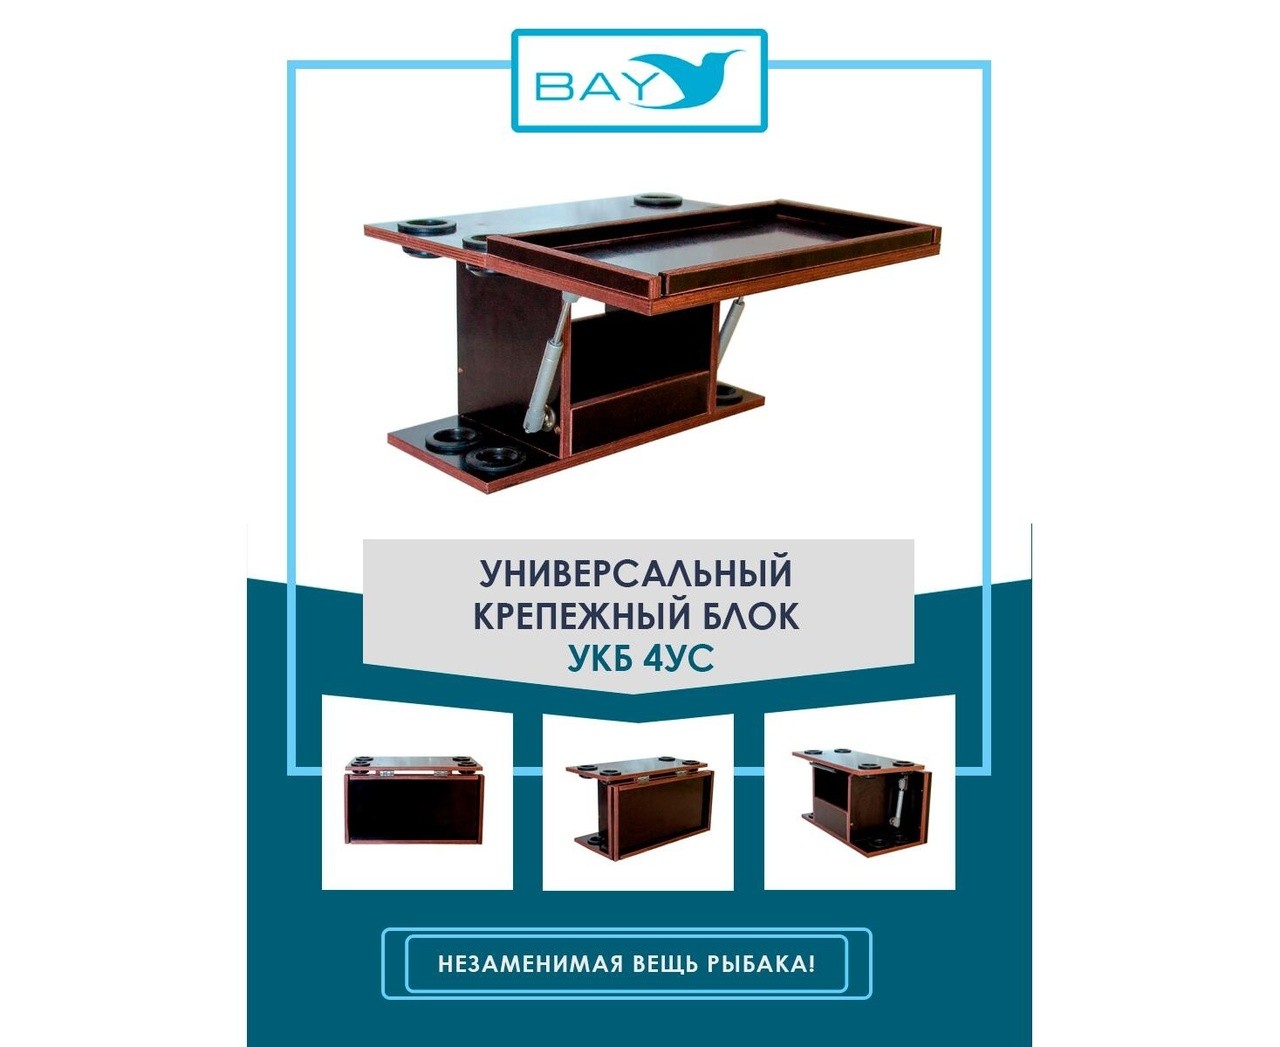 Универсальный крепежный блок с отверстиями под 4 удилища + столик/дверца (УКБ 4УС) - фото